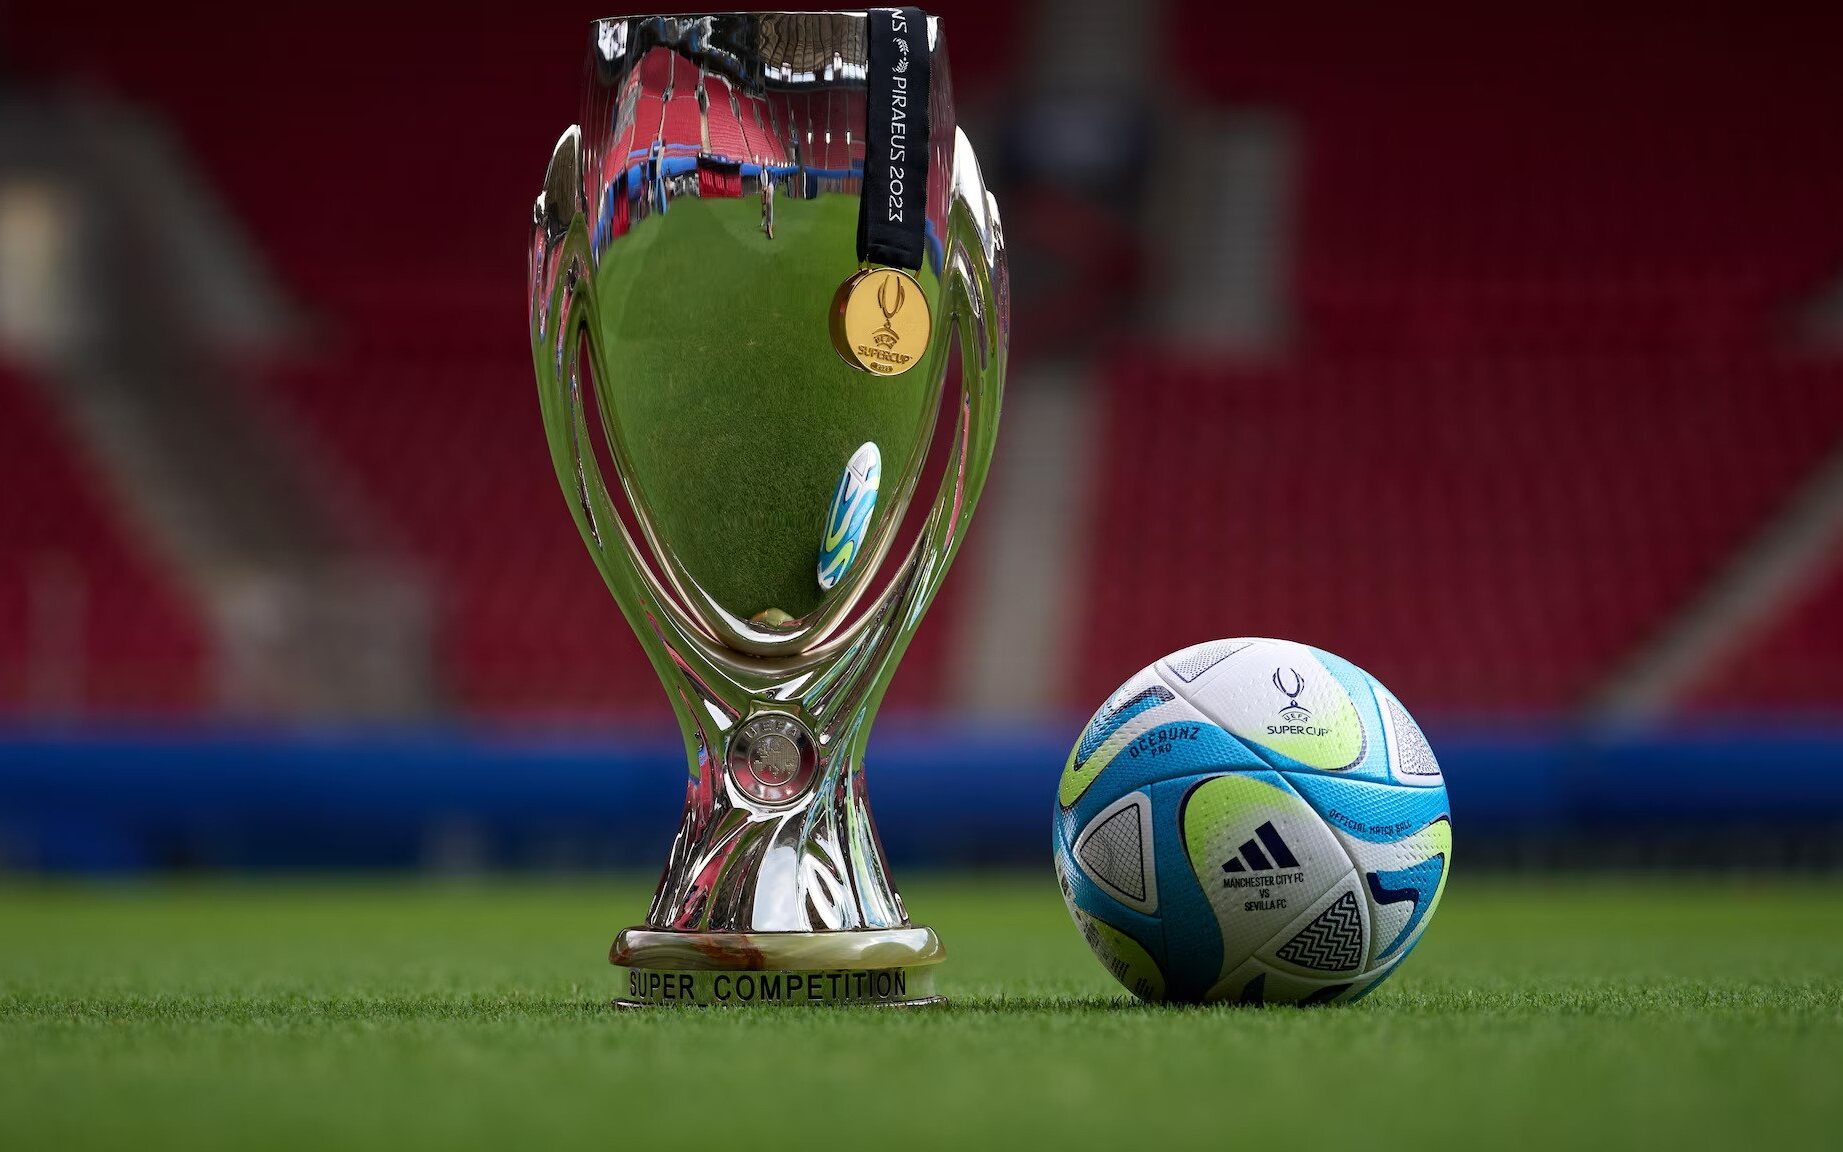 Os maiores campeões da Supercopa da UEFA são da Champions League